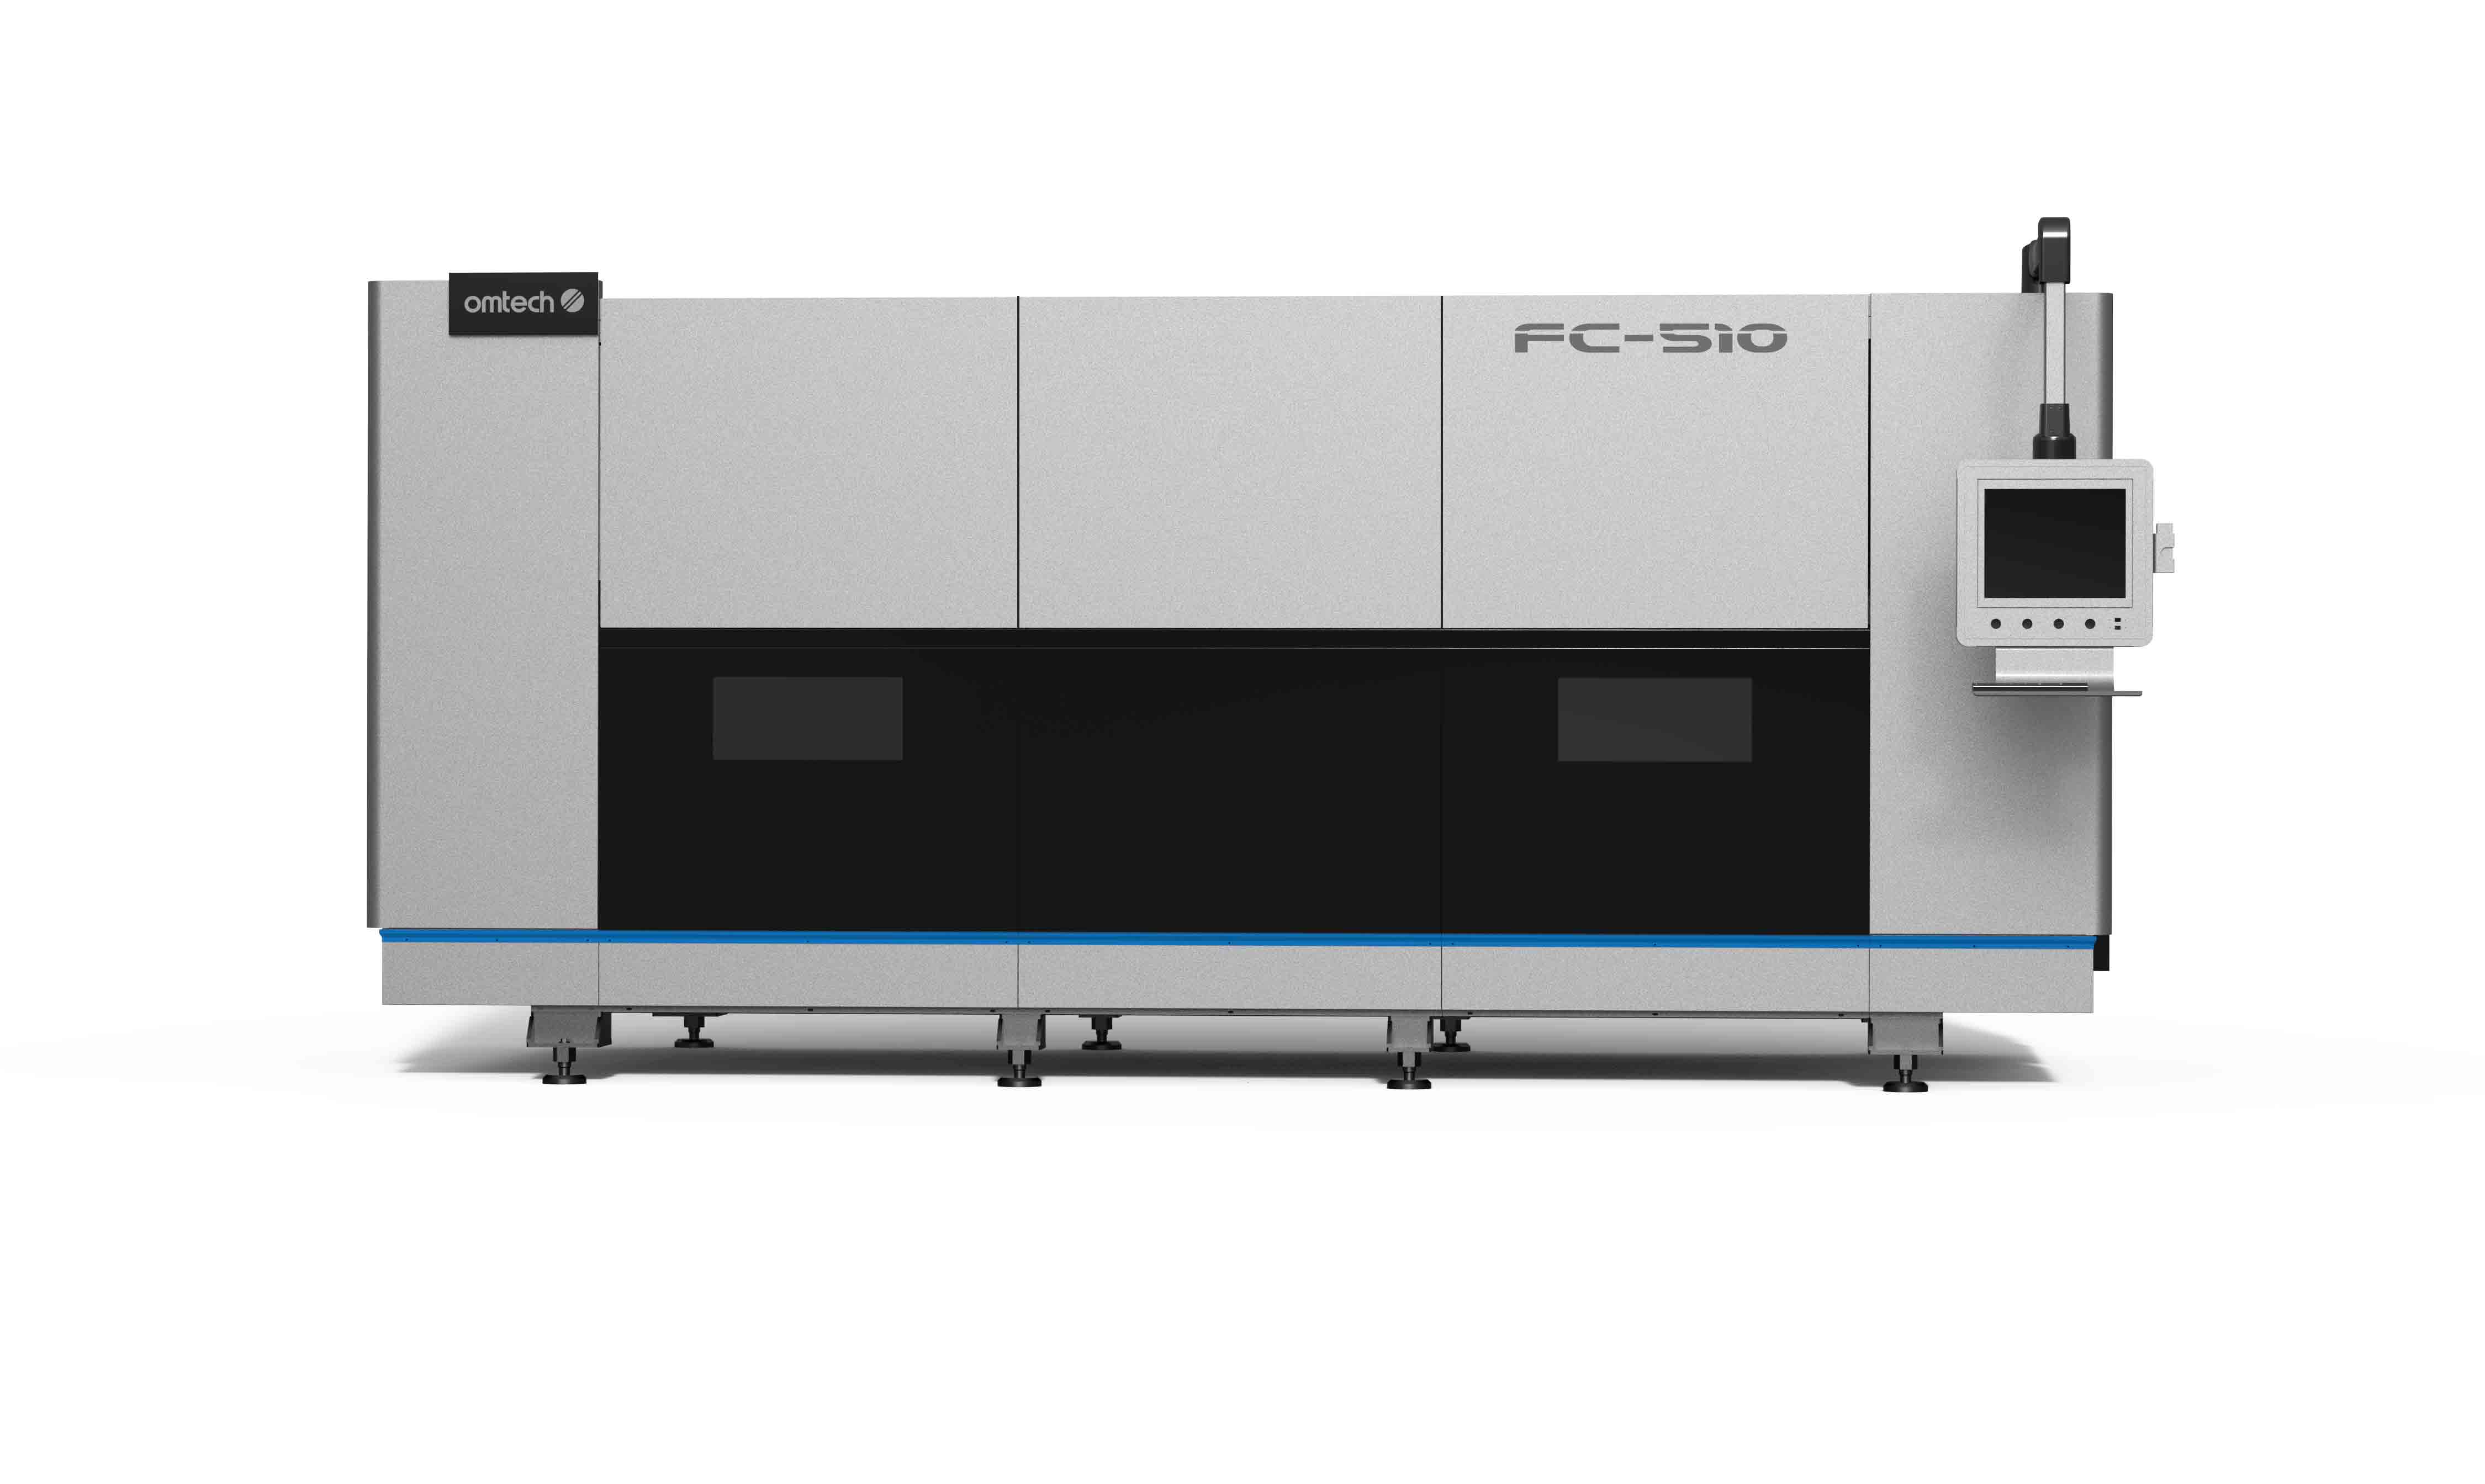 FC-510 Fiber Laser Cutting Machine